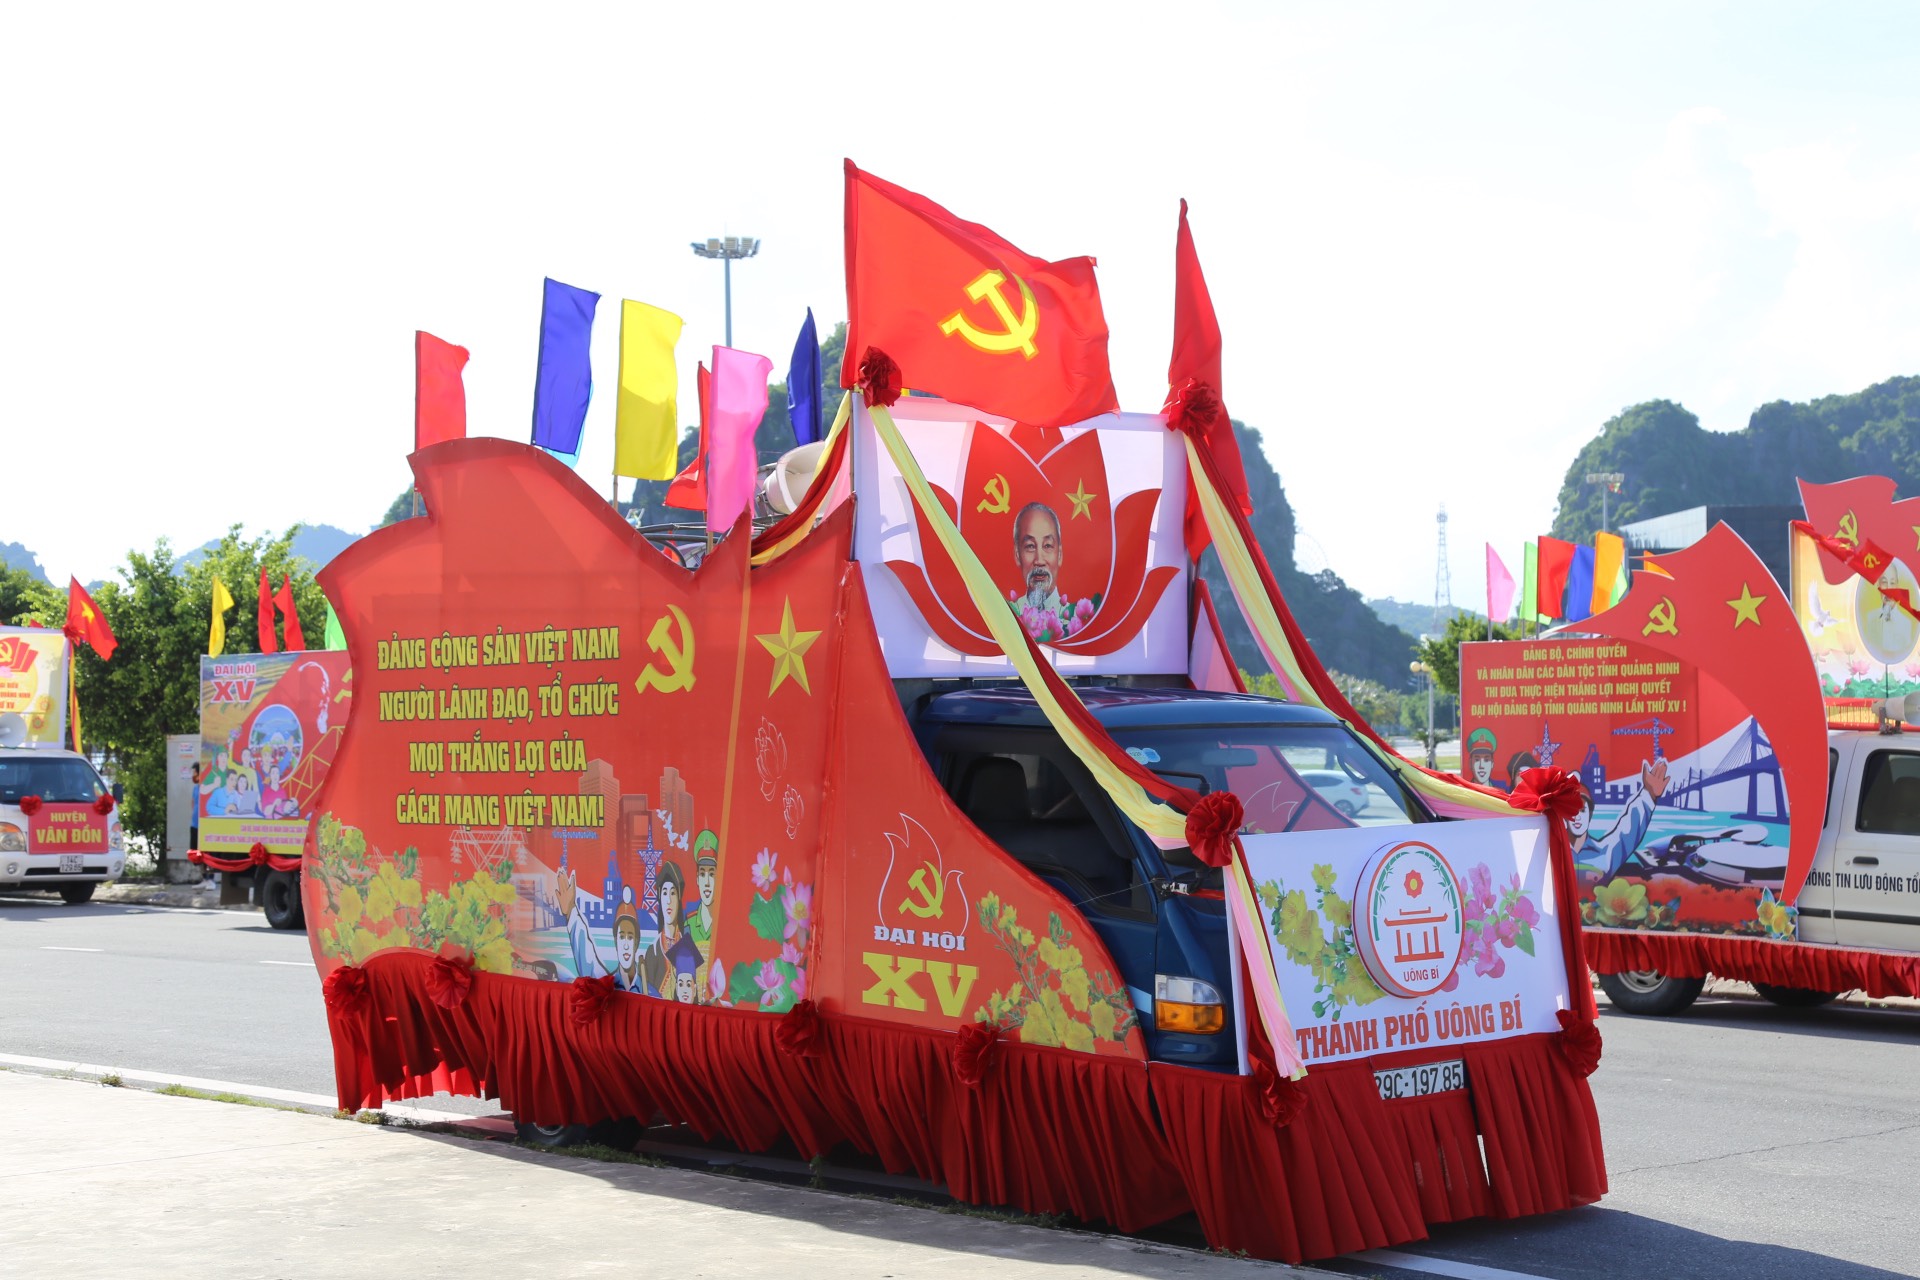 Các nội dung tuyên truyền về Đại hội Đảng bộ tỉnh được thể hiện trên xe